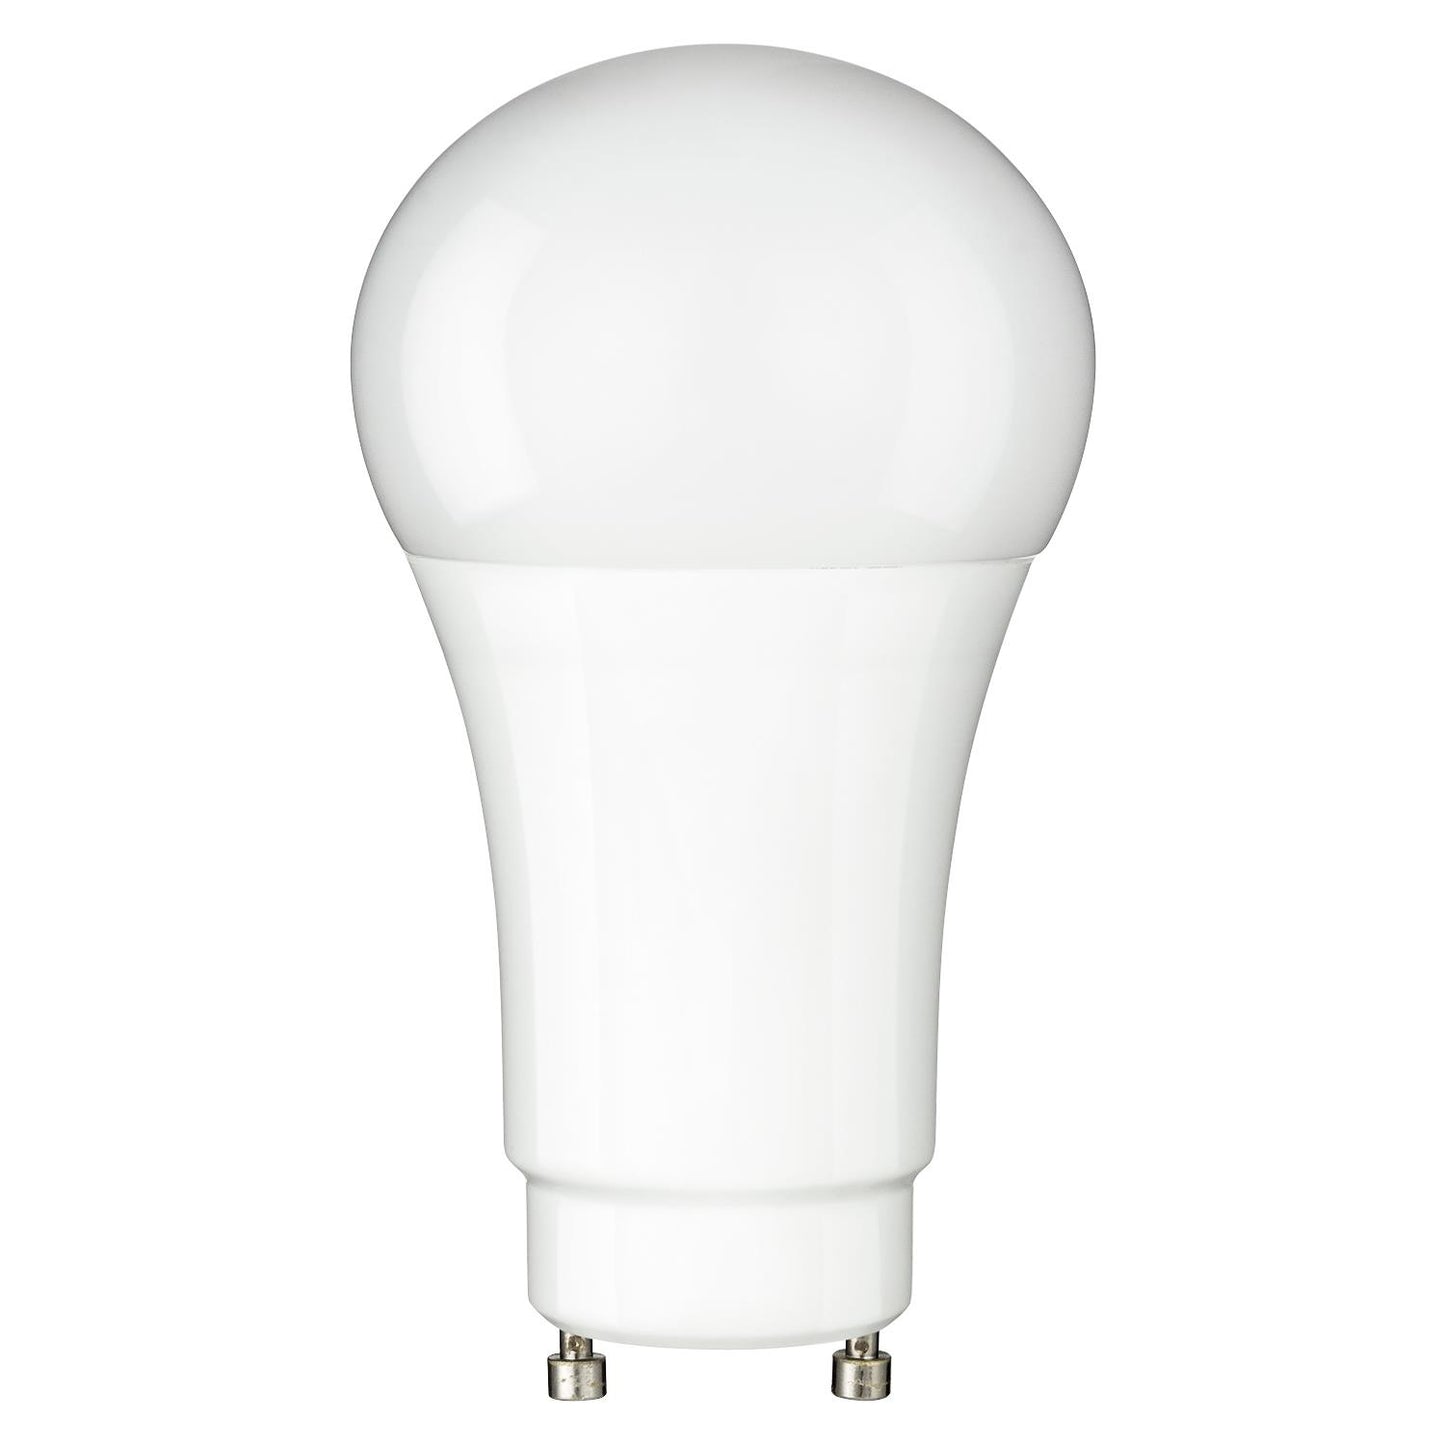 Sunlite A19/GU24/LED/10W/CRI90/D/E/30K 10 Watt A19 Lamp Warm White